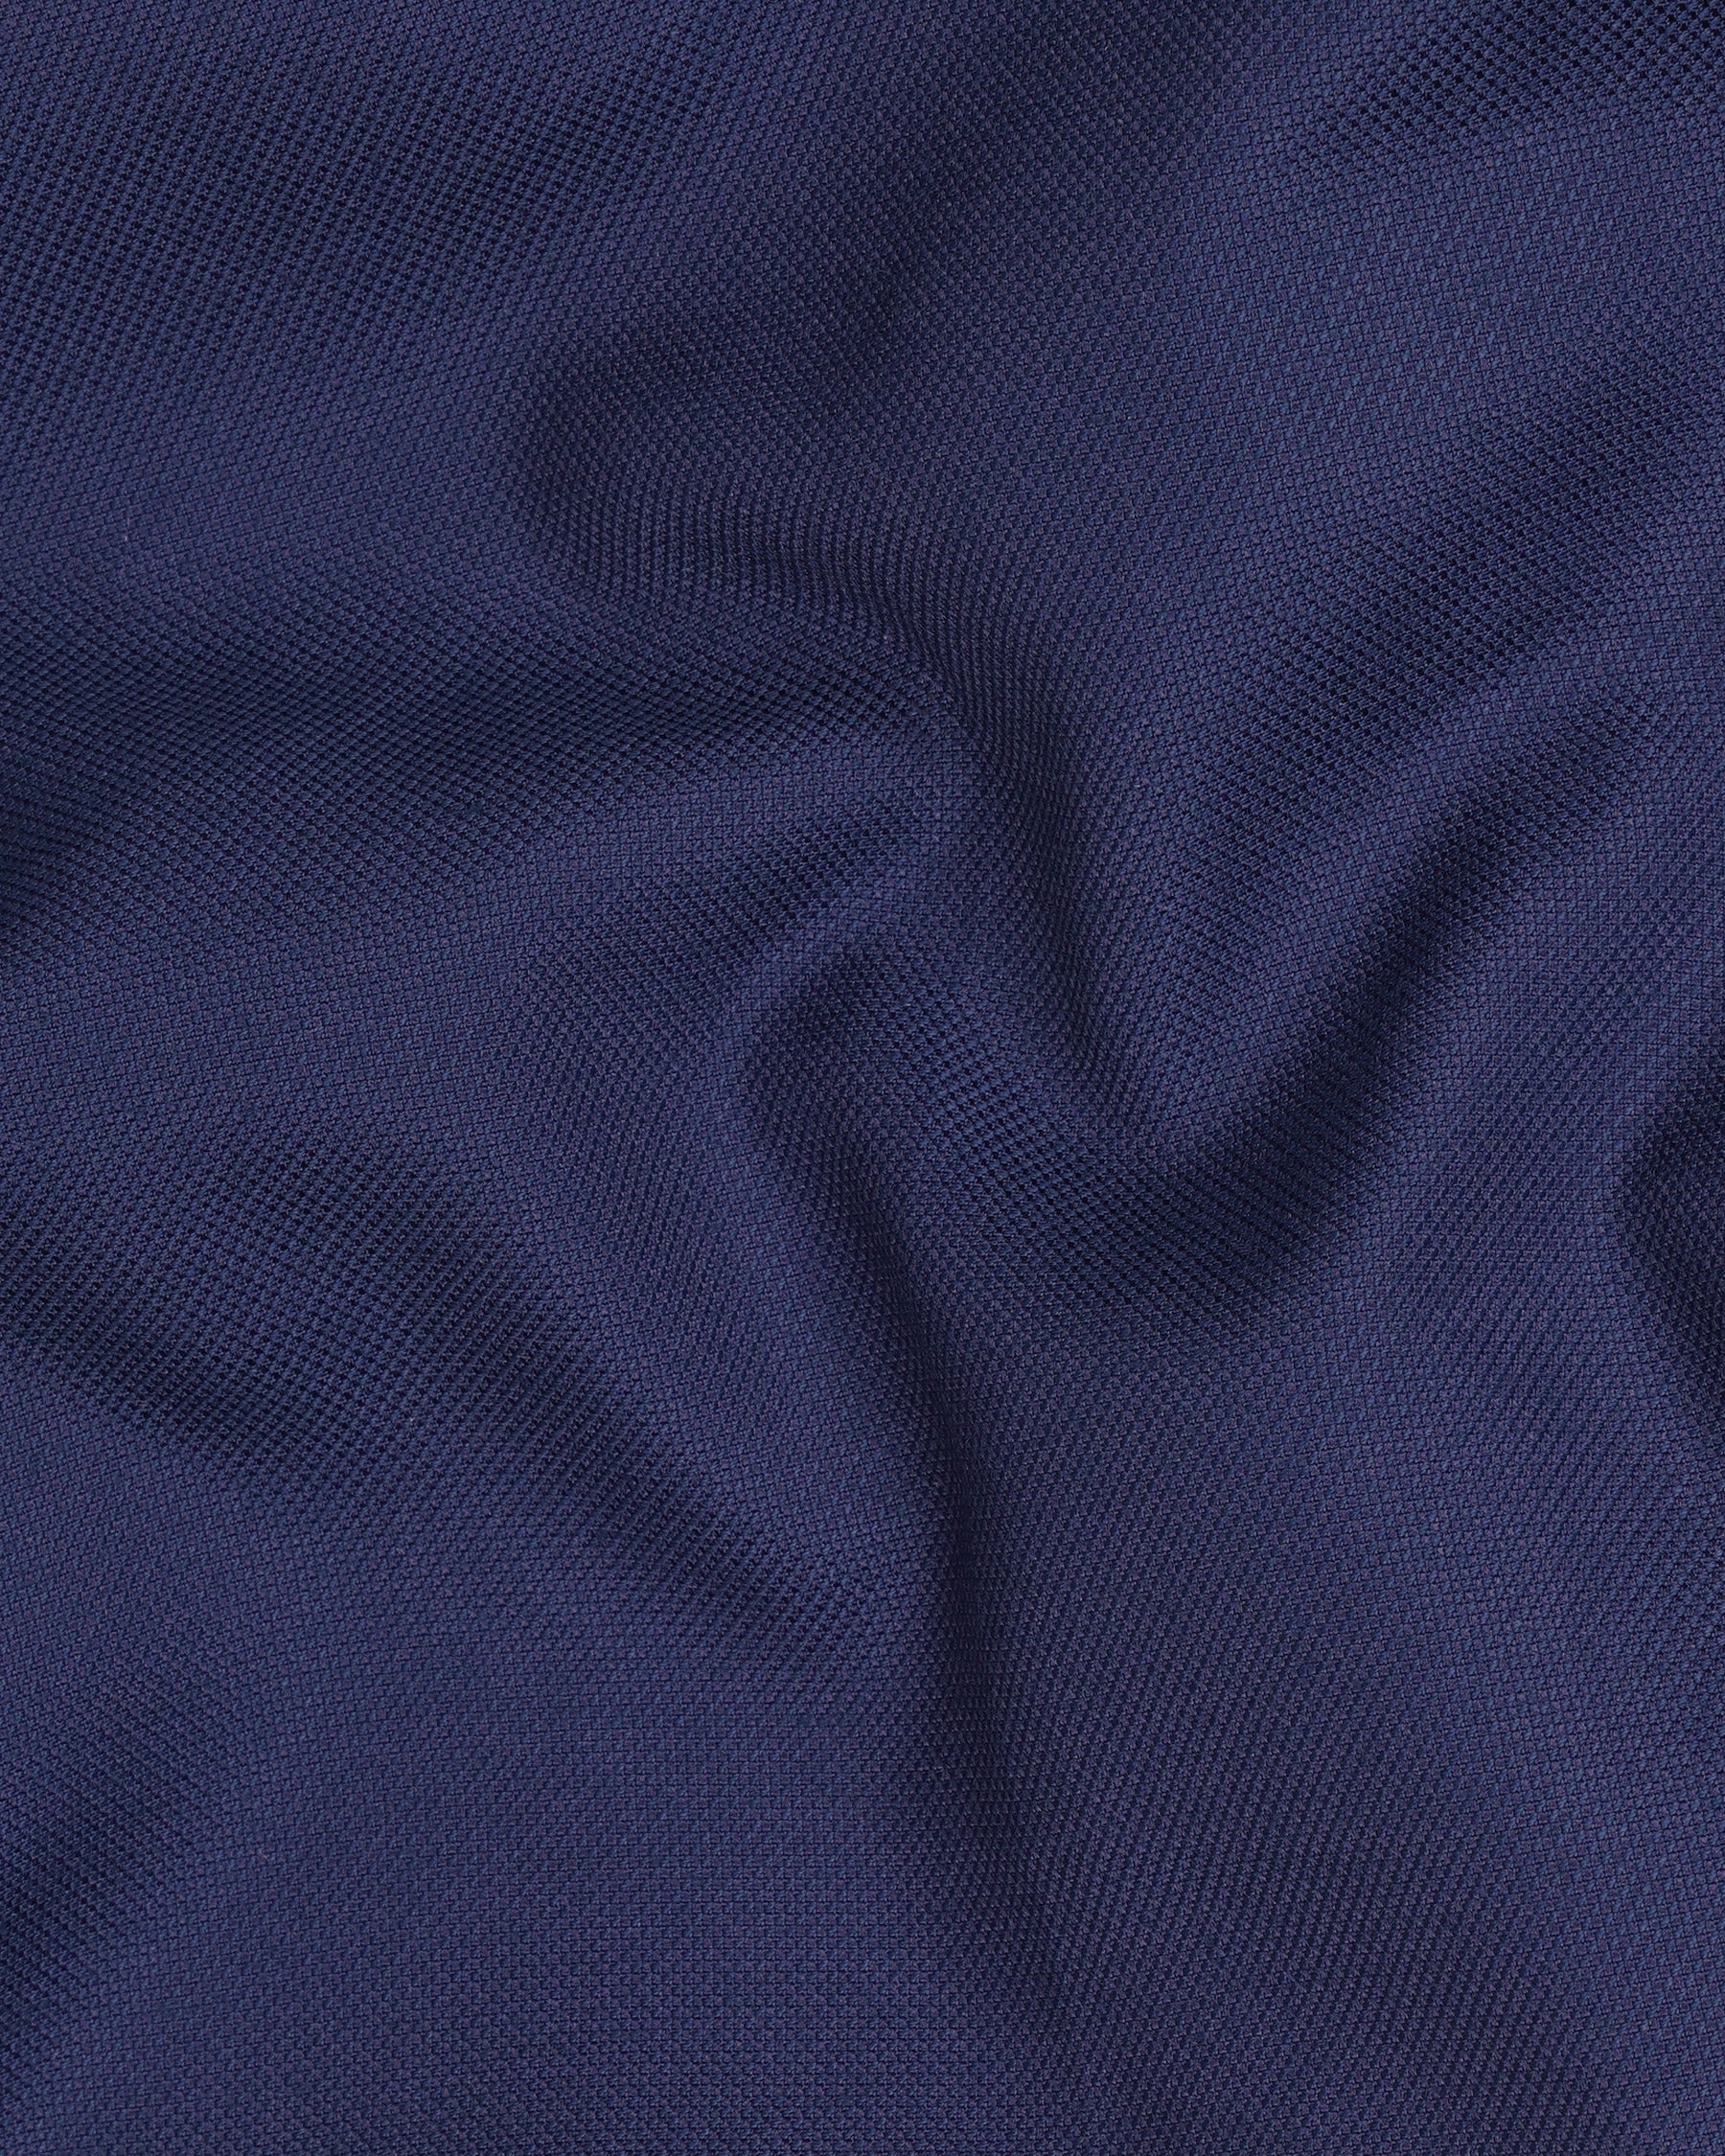 Martinique Blue Textured Pant T1990-28, T1990-30, T1990-32, T1990-34, T1990-36, T1990-38, T1990-40, T1990-42, T1990-44